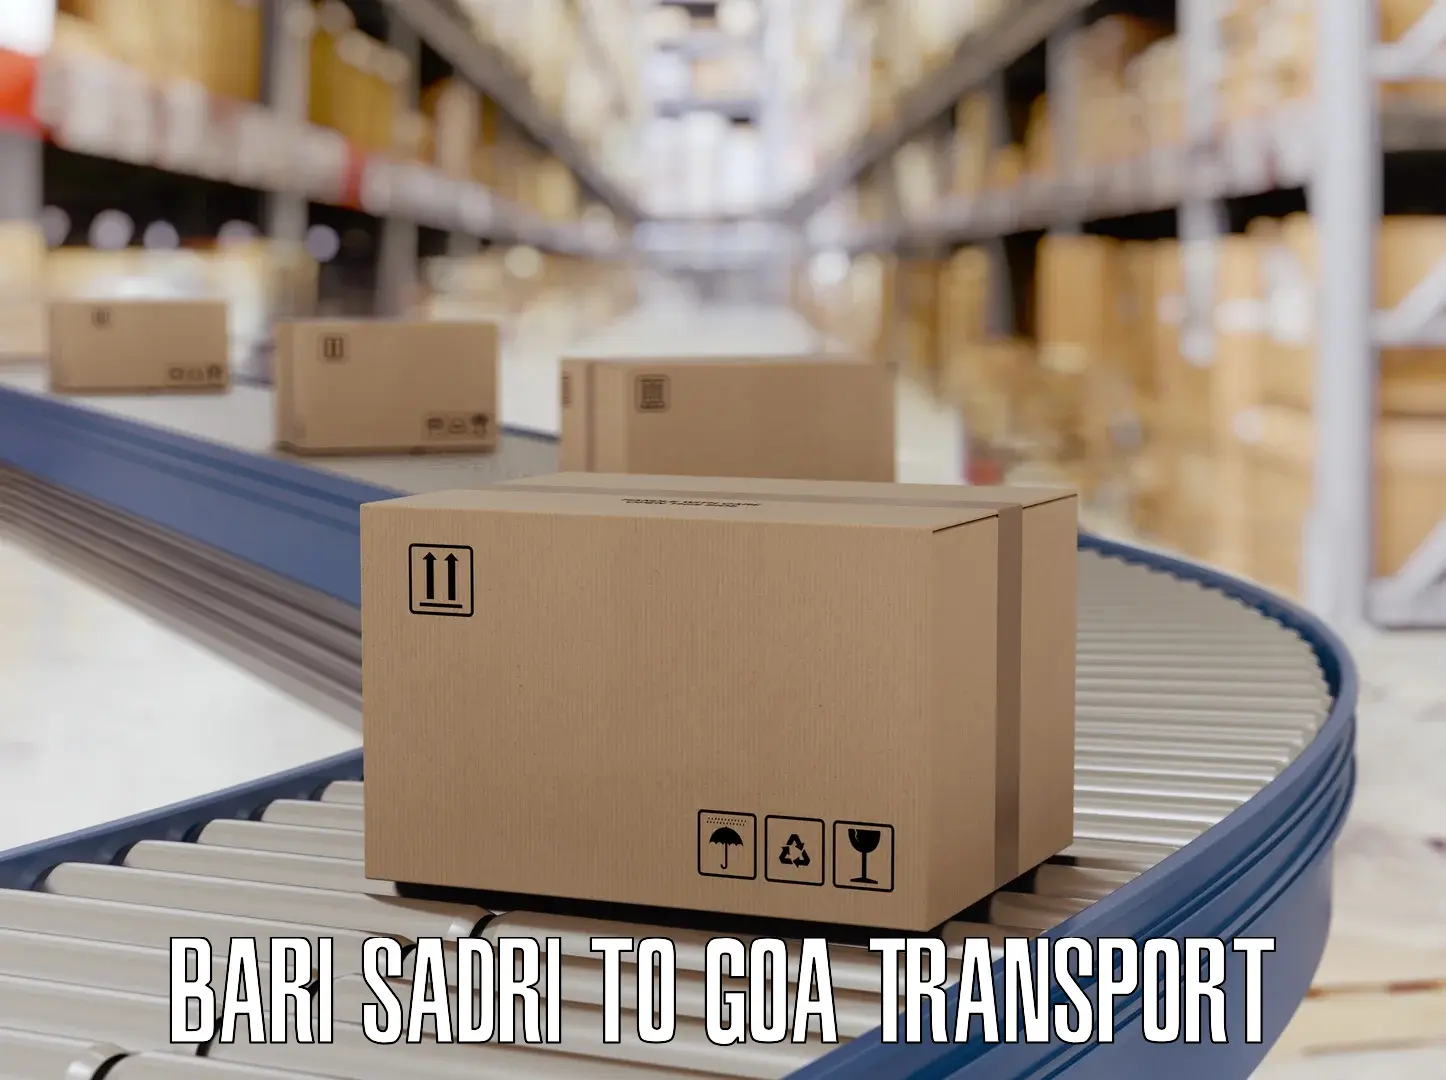 Delivery service Bari Sadri to Vasco da Gama